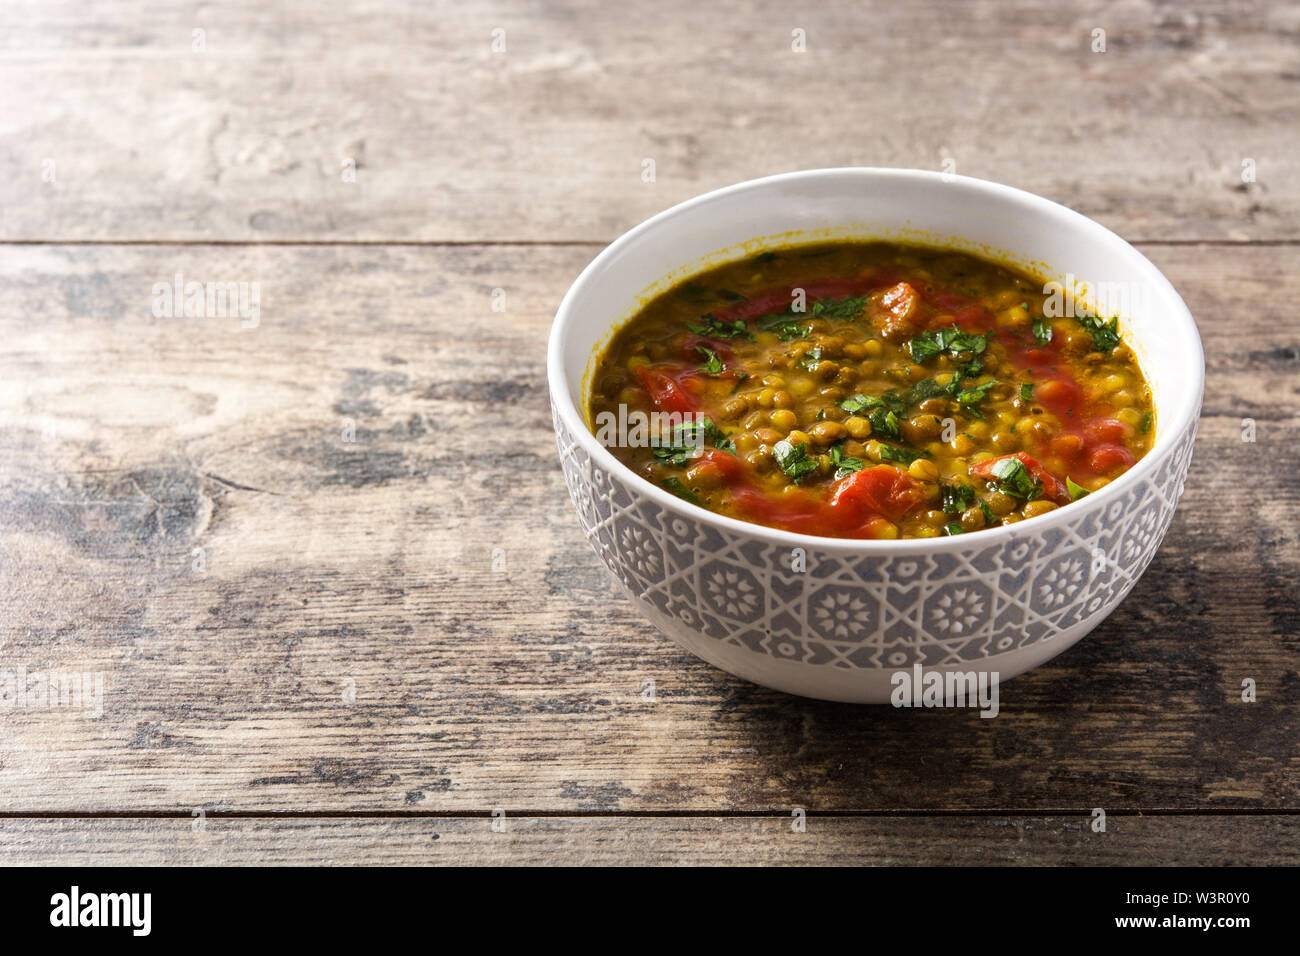 Soupe aux lentilles indiennes dal (dhal) dans un bol sur la table en bois. Copyspace Banque D'Images